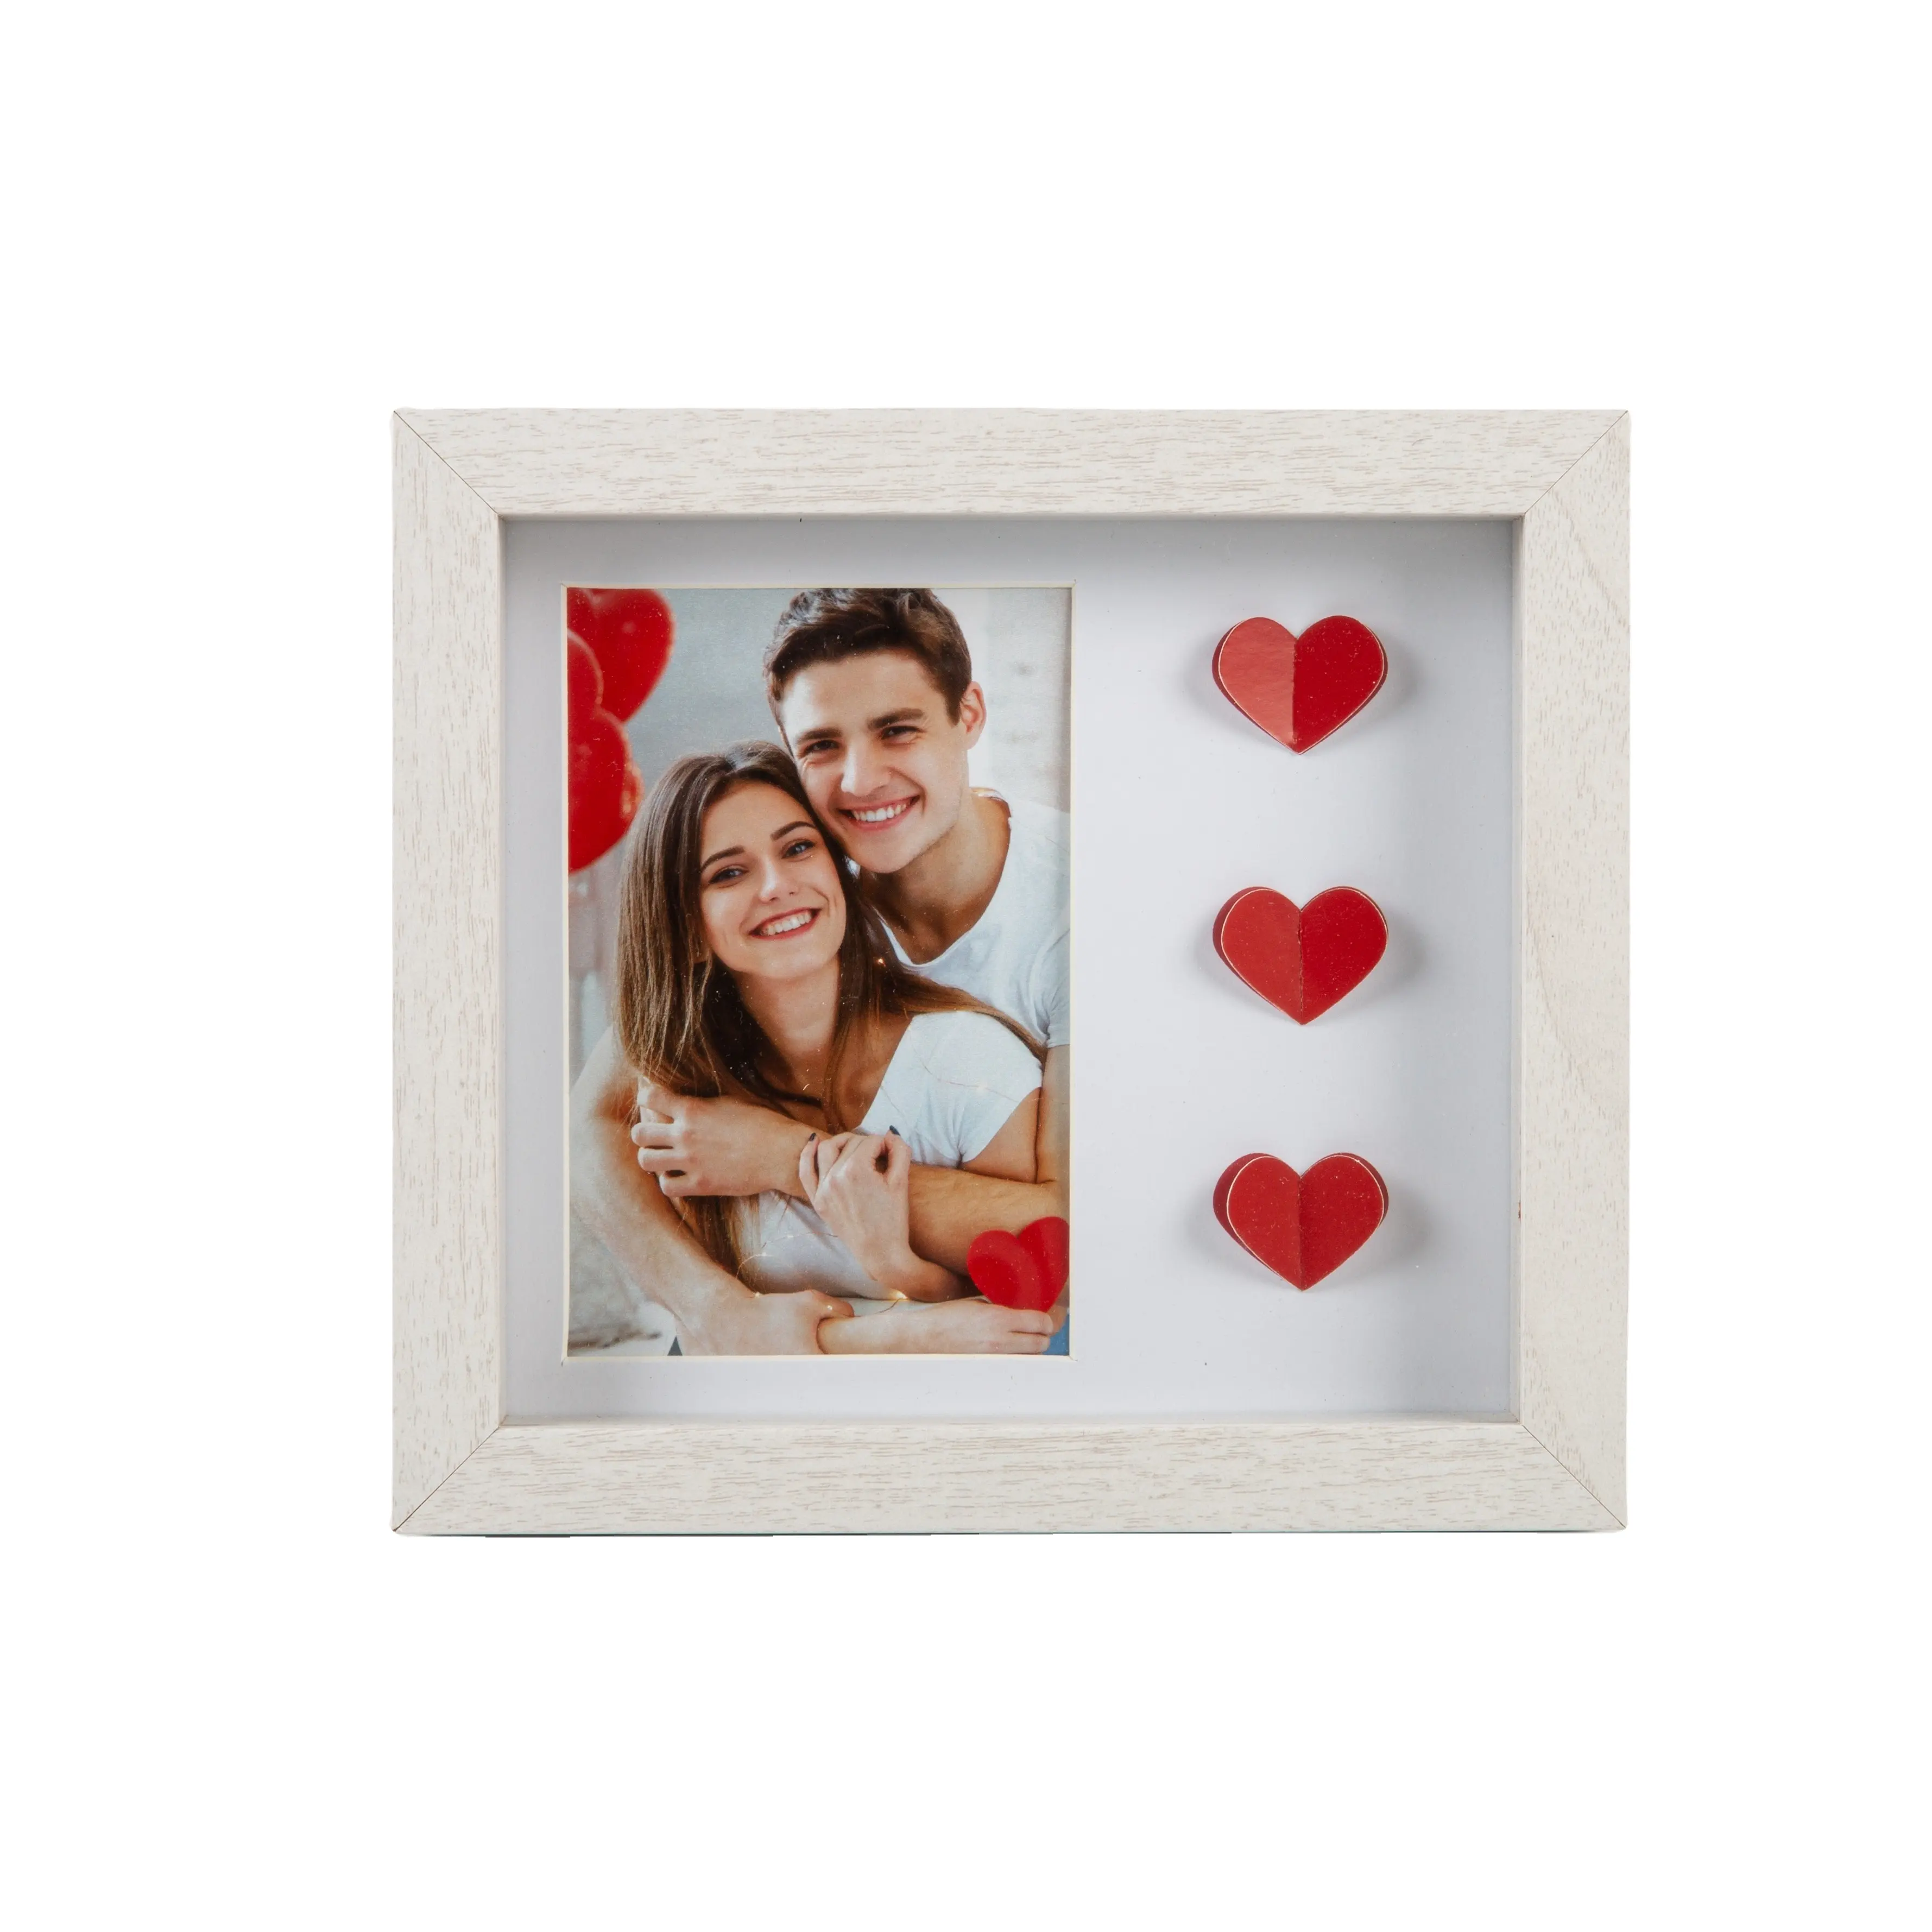 So핀 좋은 품질 로맨틱 커플 기념 붉은 심장 장식 나무 그림자 상자 사진 프레임